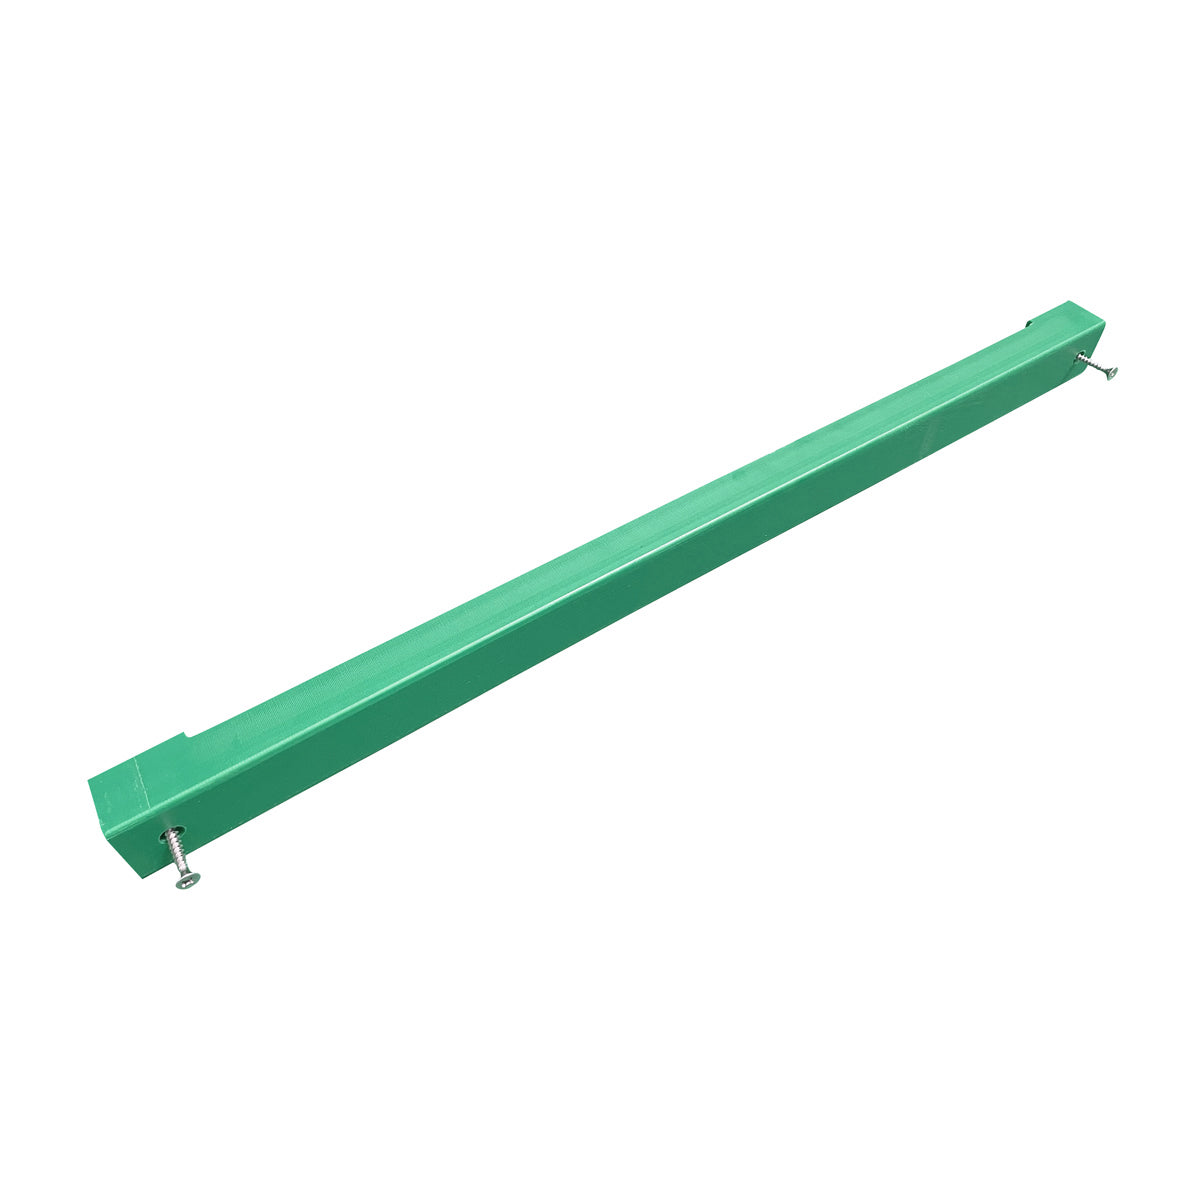 Knivholder for skjærebrett - 70 cm - grønn